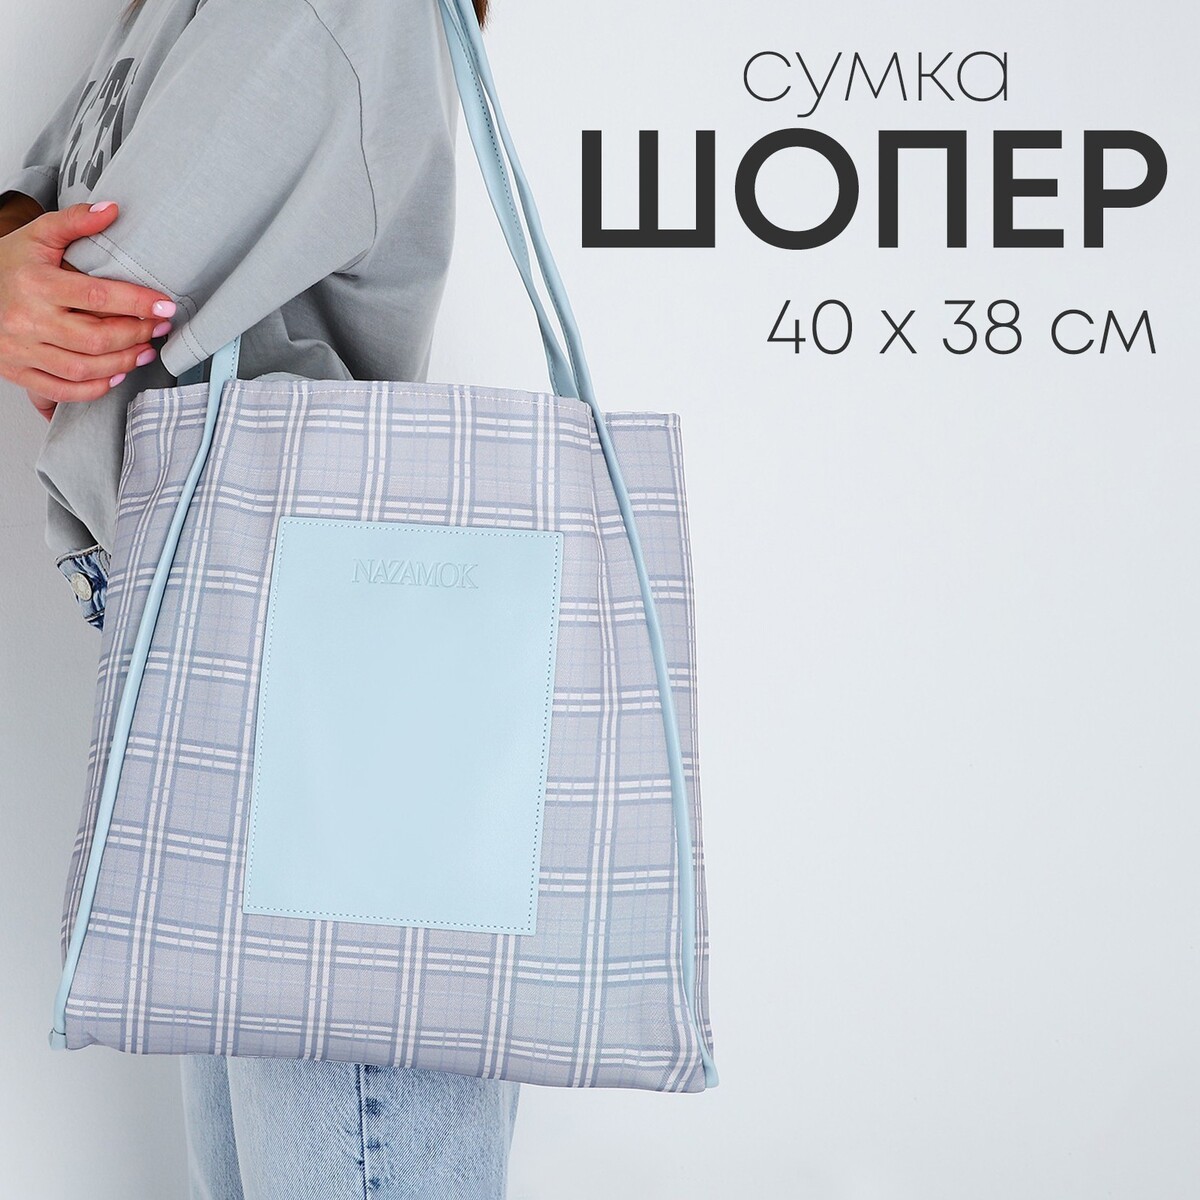 Сумка - шопер с нашивкой nazamok серый, 40×38×7 см сумка шопер без застежки из текстиля серый